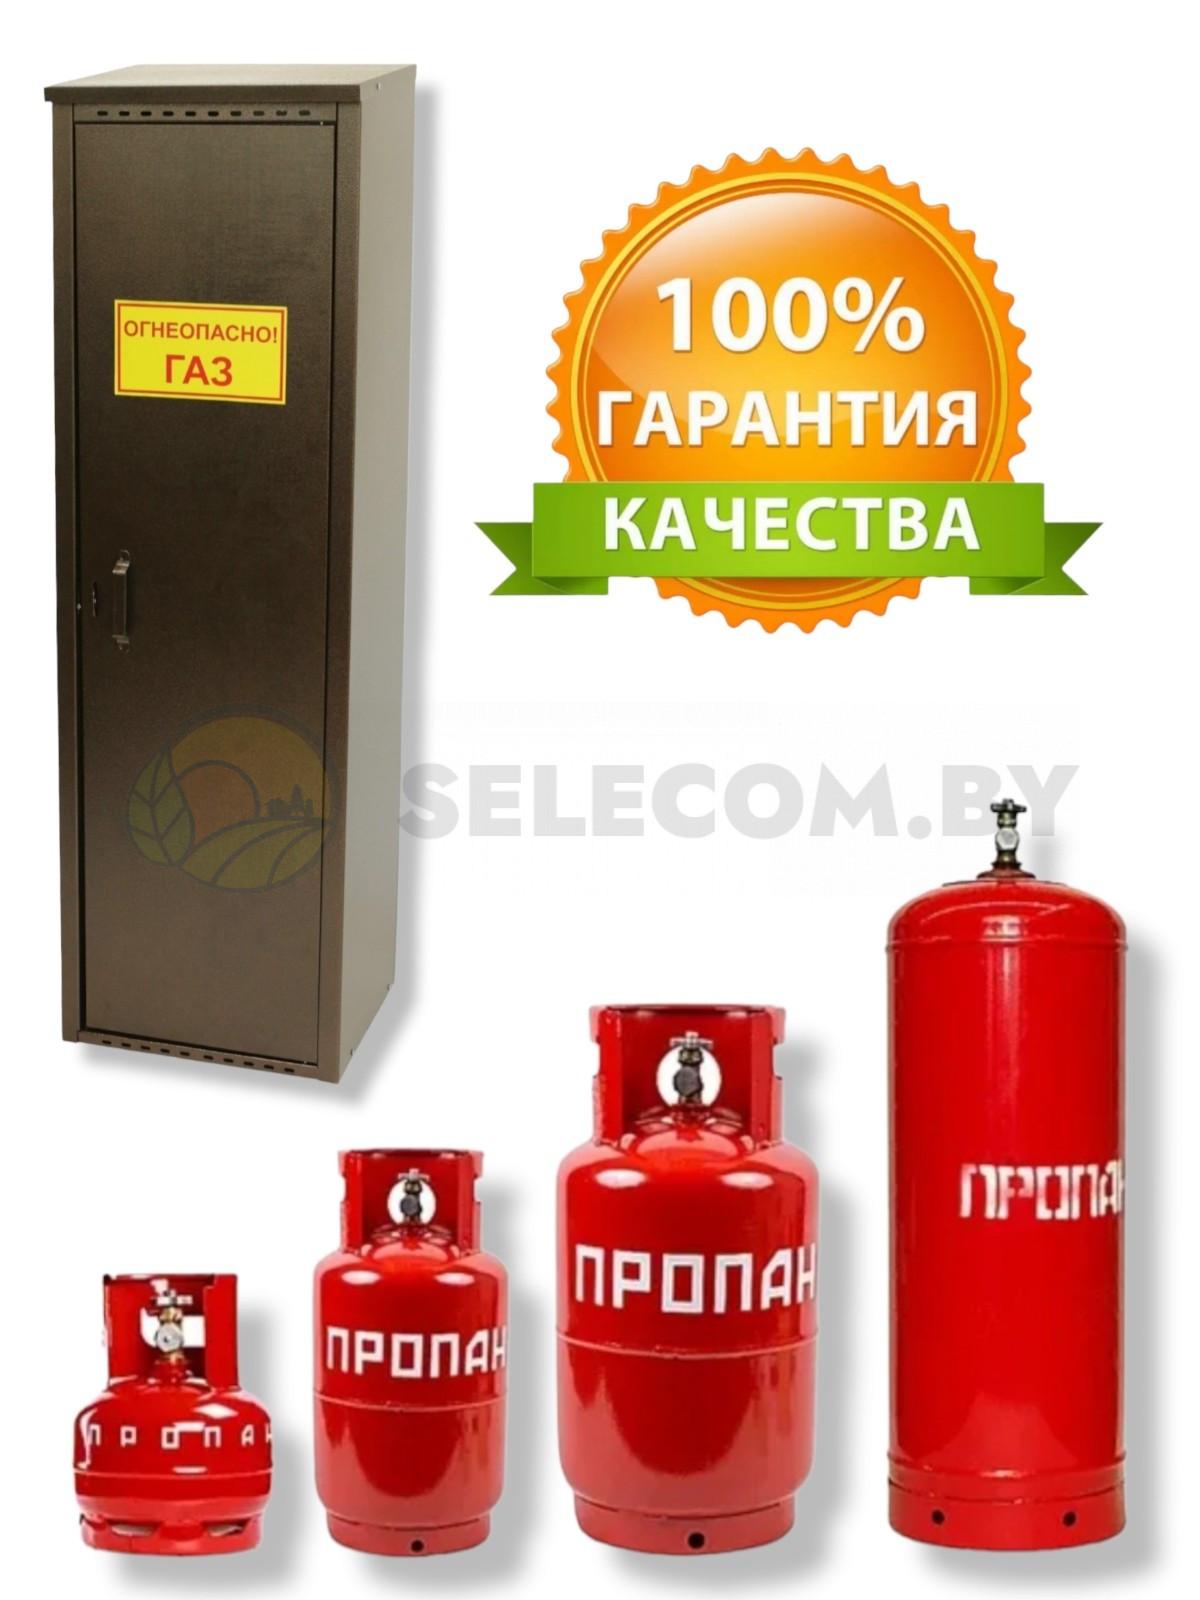 Наклейка для газовых шкафов «Огнеопасно ГАЗ»(1)